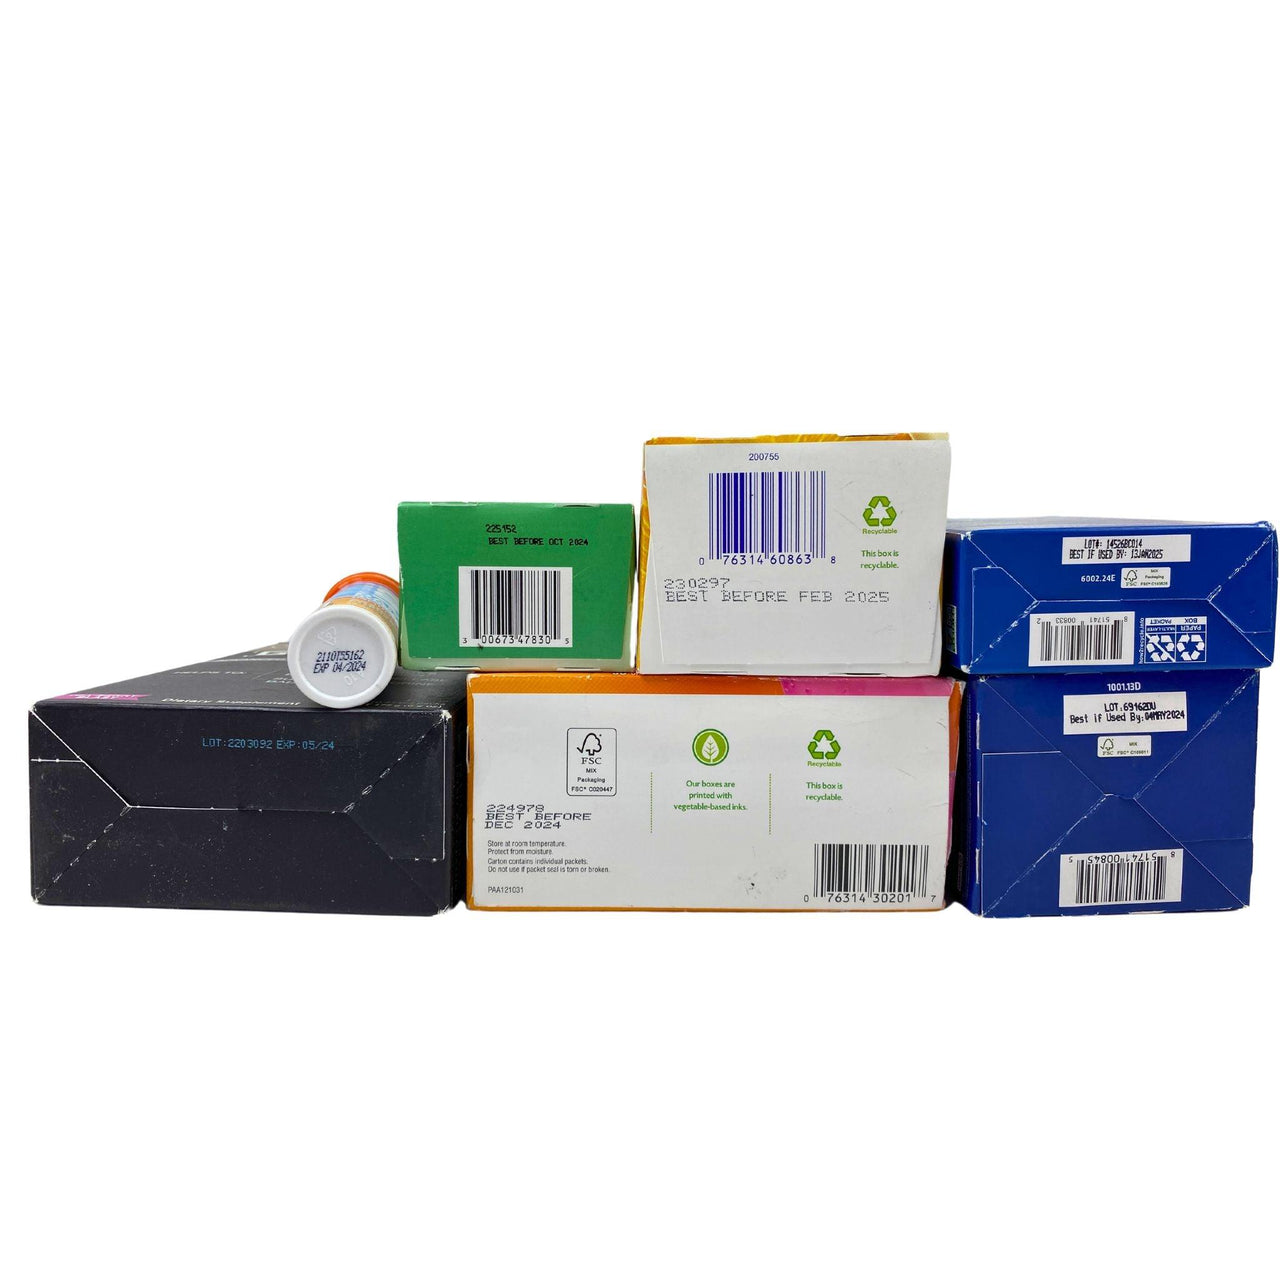 Packets Assorted Mix Includes Vitamin C Support, Liquid I.V. , Nugenix & Immunityy Tablets (45 Pcs Lot) - Discount Wholesalers Inc